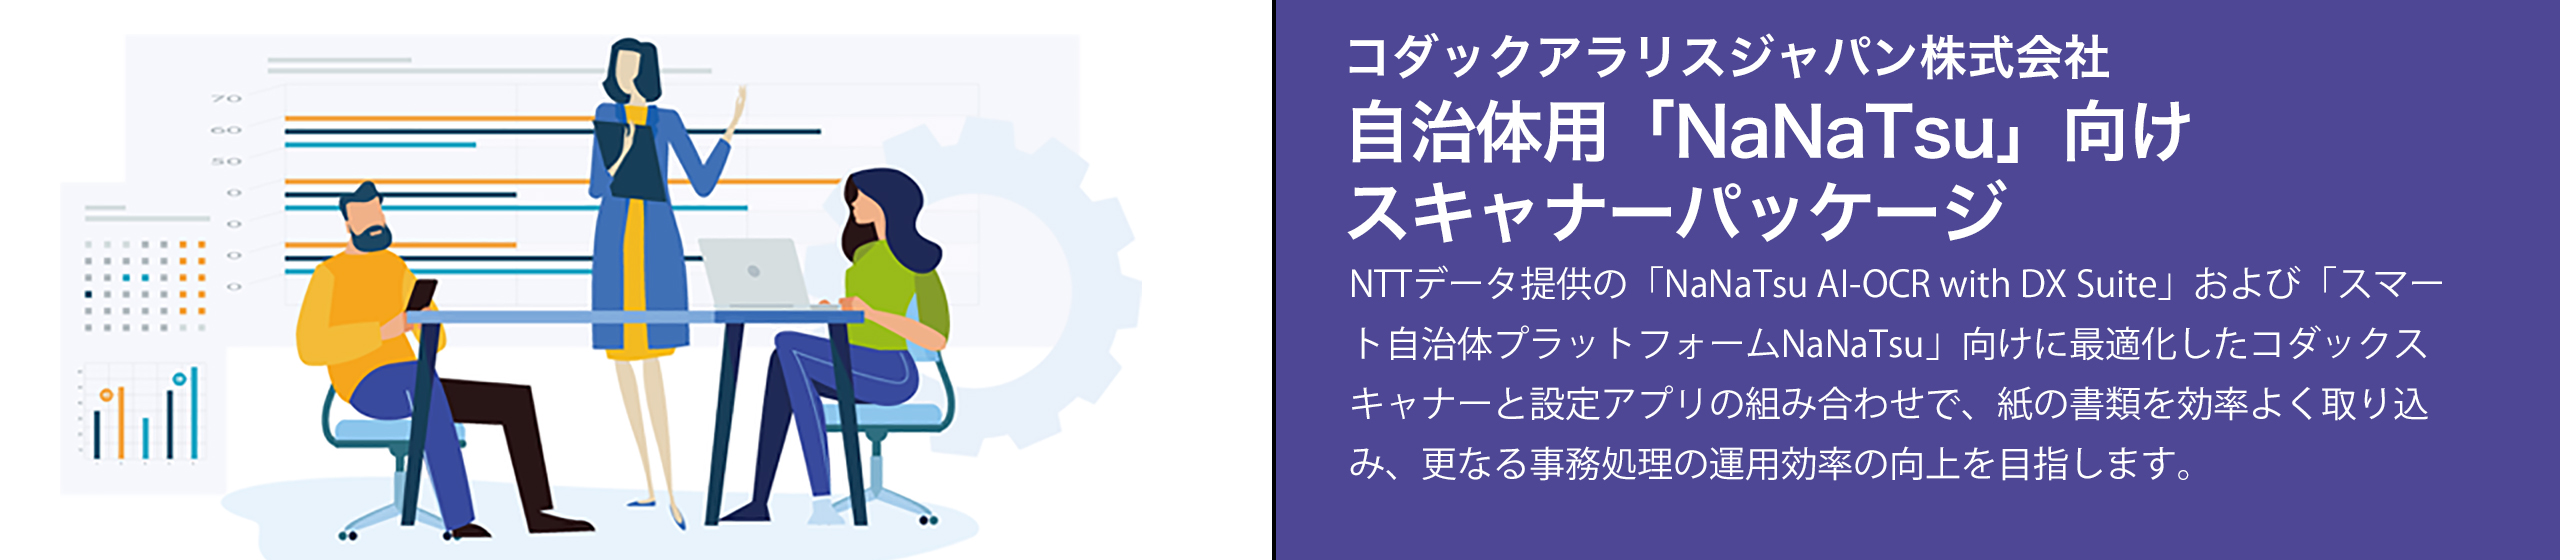 t-nanatsu.jpg